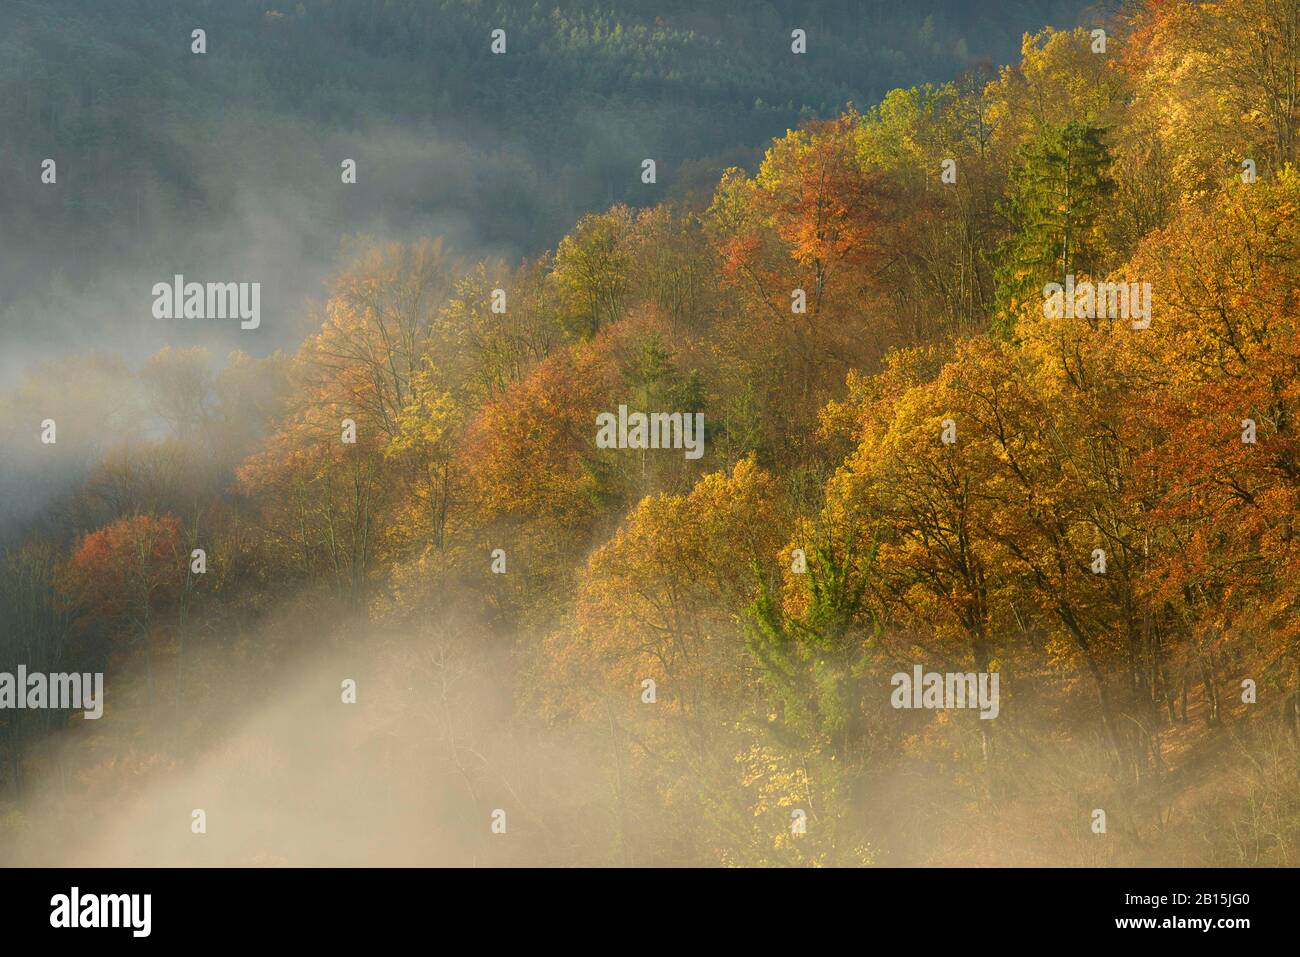 Stift Altenburg / Waldviertel / Oberösterreich: Nebeliger Herbstmorgen im wilden Kamp Tal mit seltenen Ständen alter Wachstumbuche, Eiche und Linde. Stockfoto